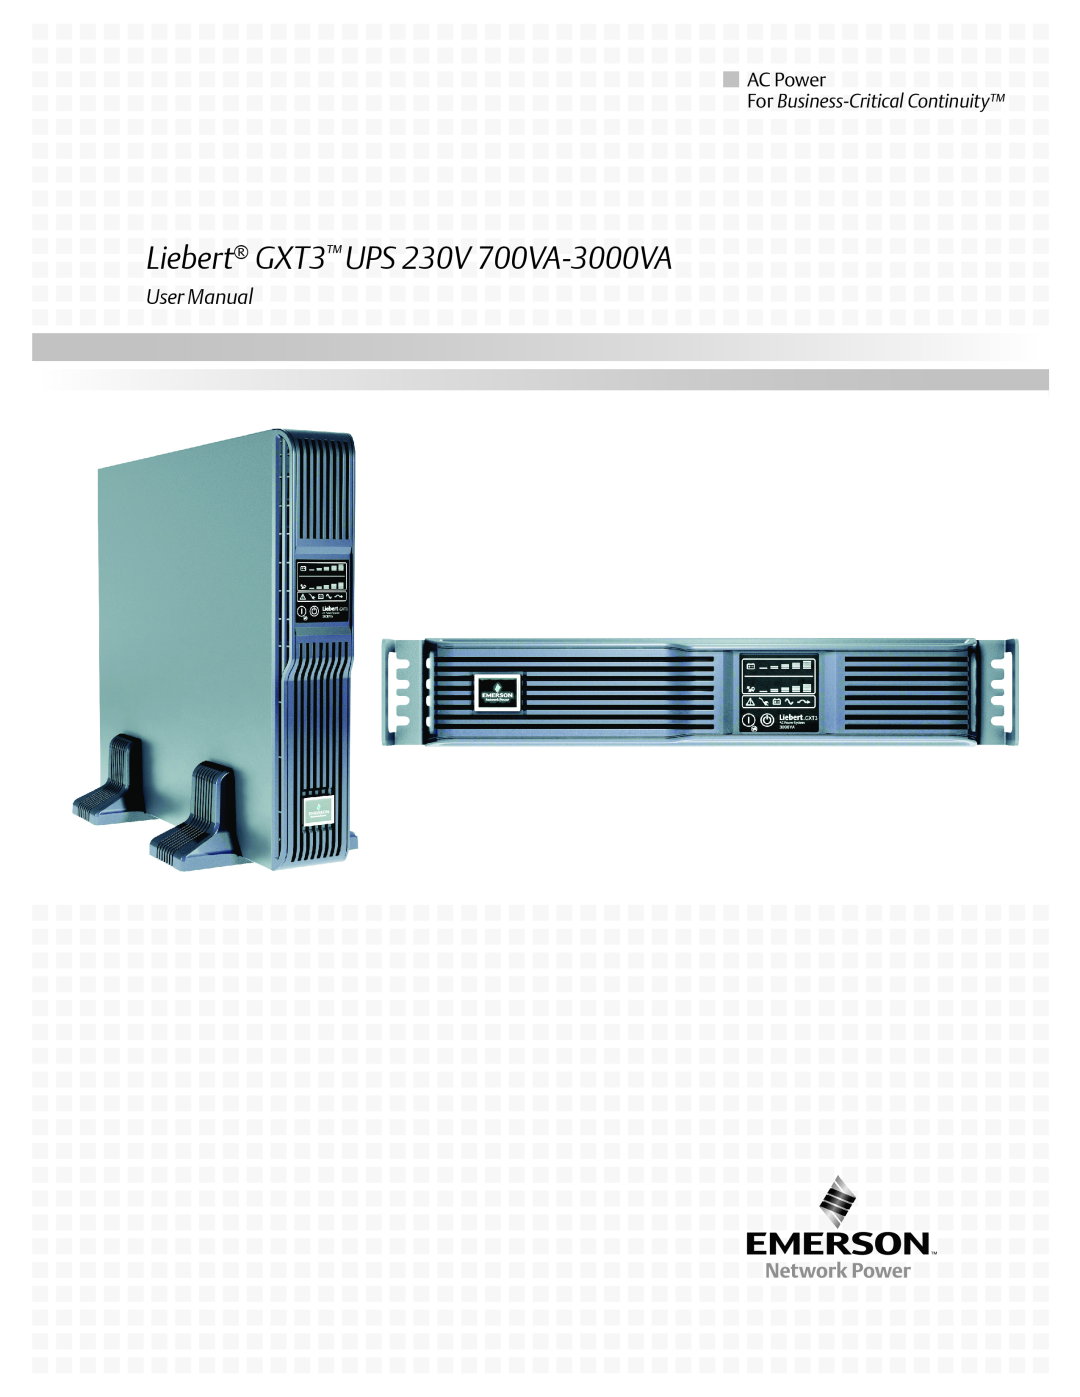 Liebert user manual Liebert GXT3 UPS 230V 700VA-3000VA, AC Power, For Business-Critical Continuity 